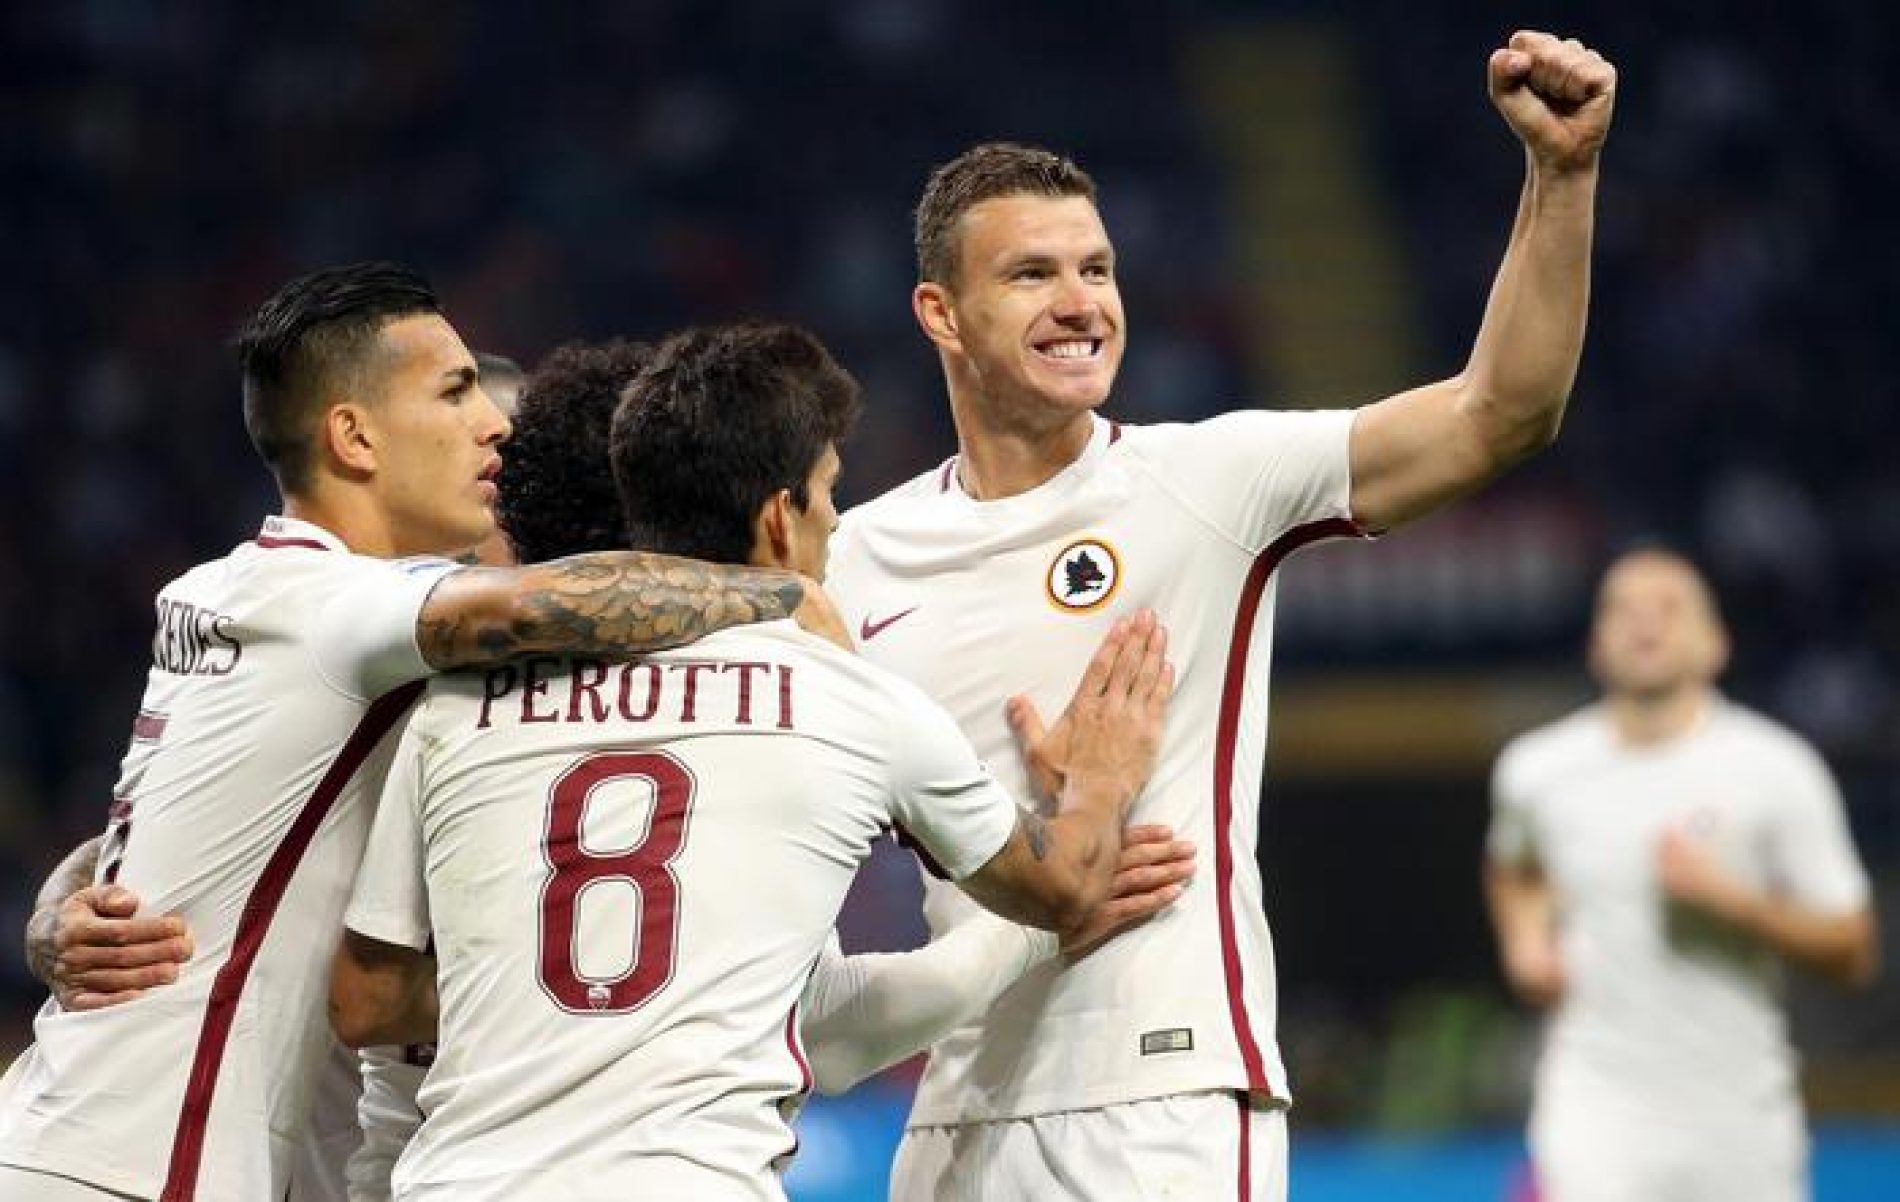 Fantastična utakmica Edina Džeke: Dva gola Milanu za vodeće mjesto na listi strijelaca Serie A